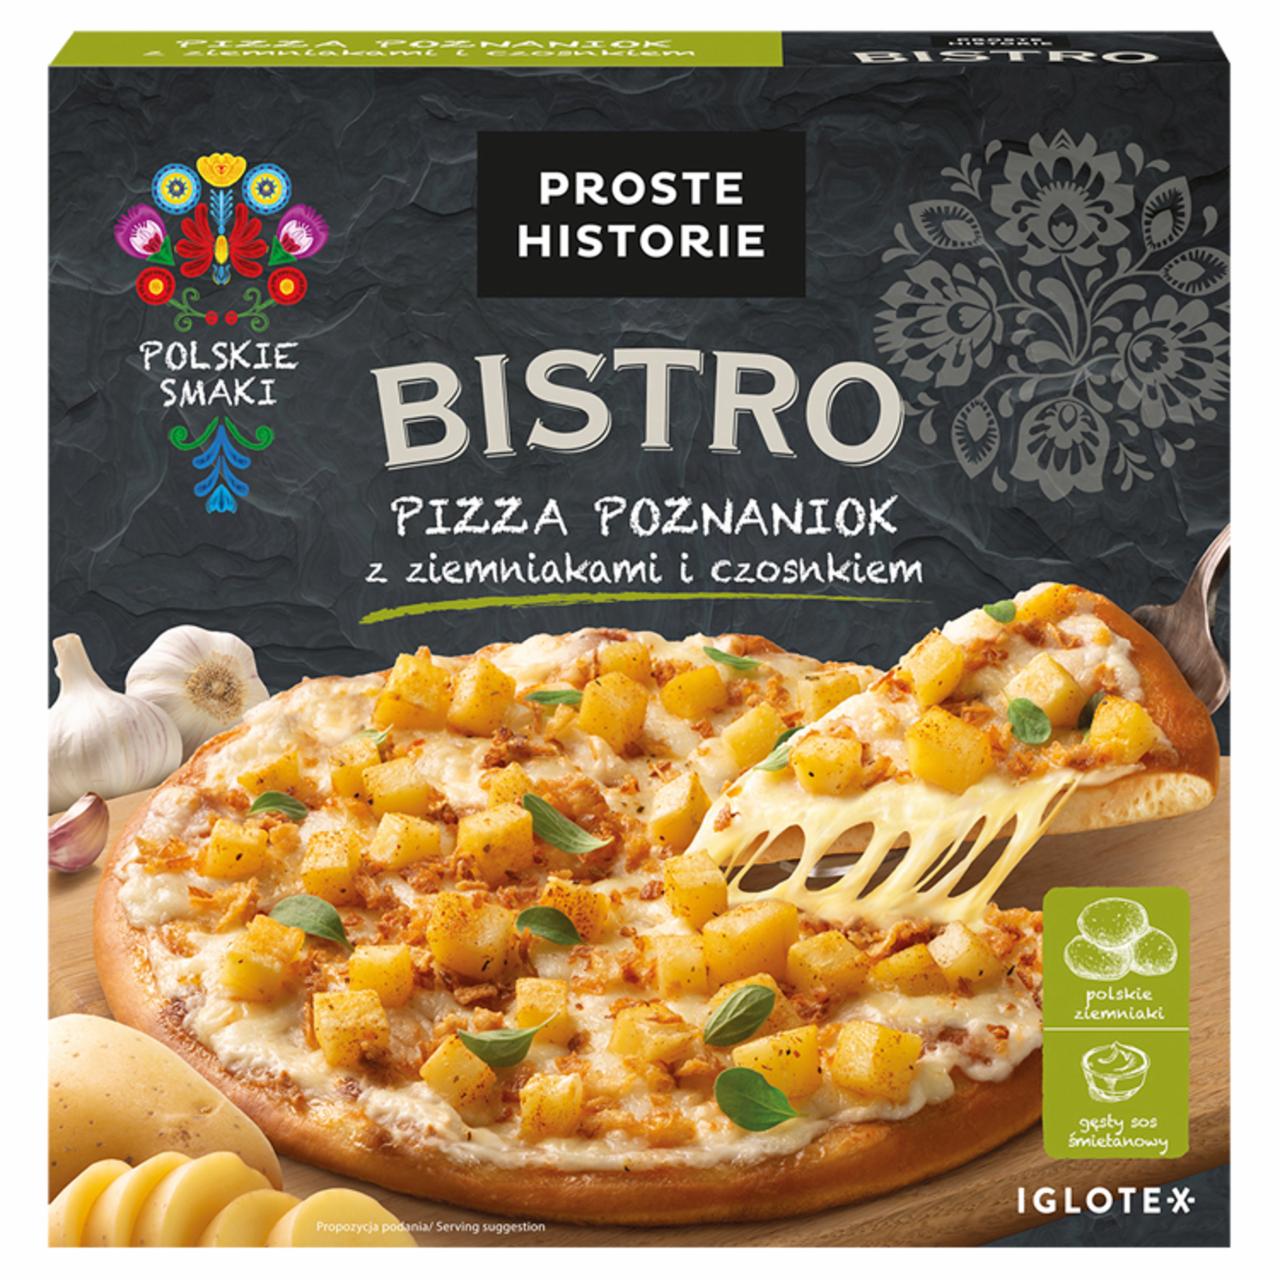 Zdjęcia - PROSTE HISTORIE Bistro Pizza poznaniok z ziemniakami i czosnkiem 385 g